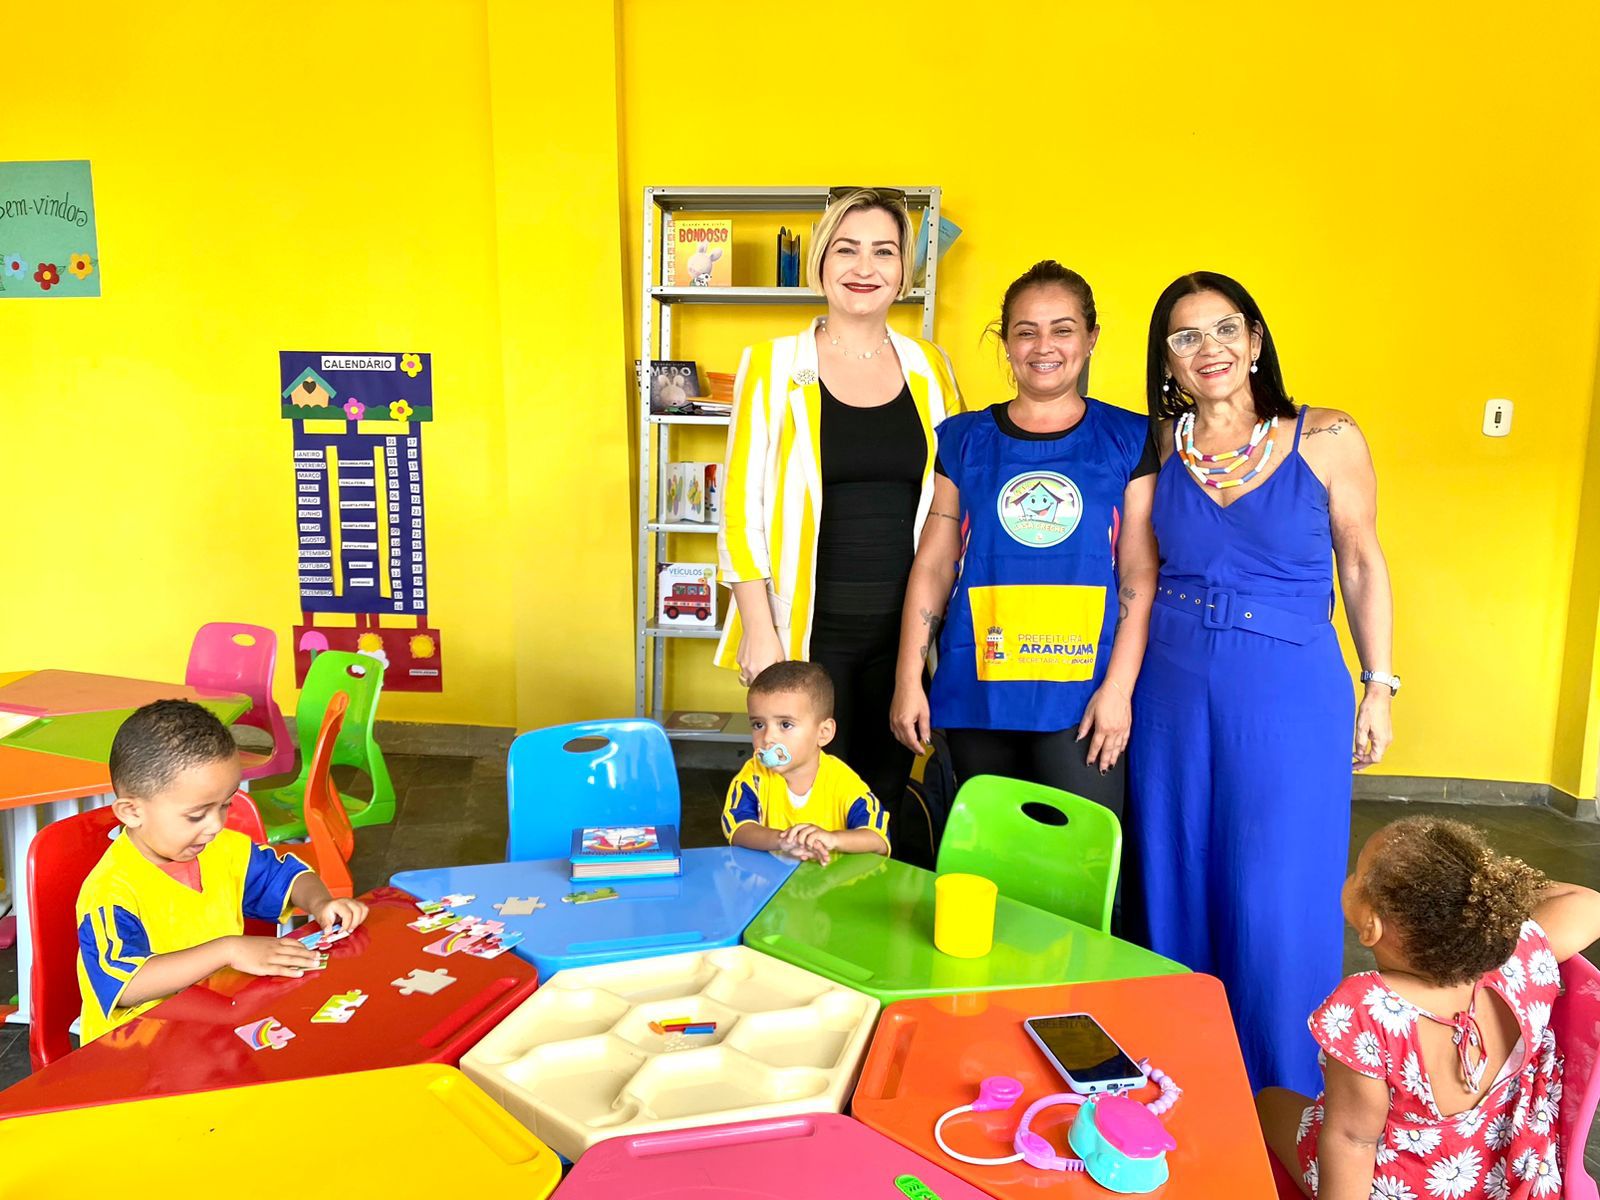 Prefeitura inaugura 8 novas Casas Creche e reforça a geração de trabalho e renda no município de Araruama